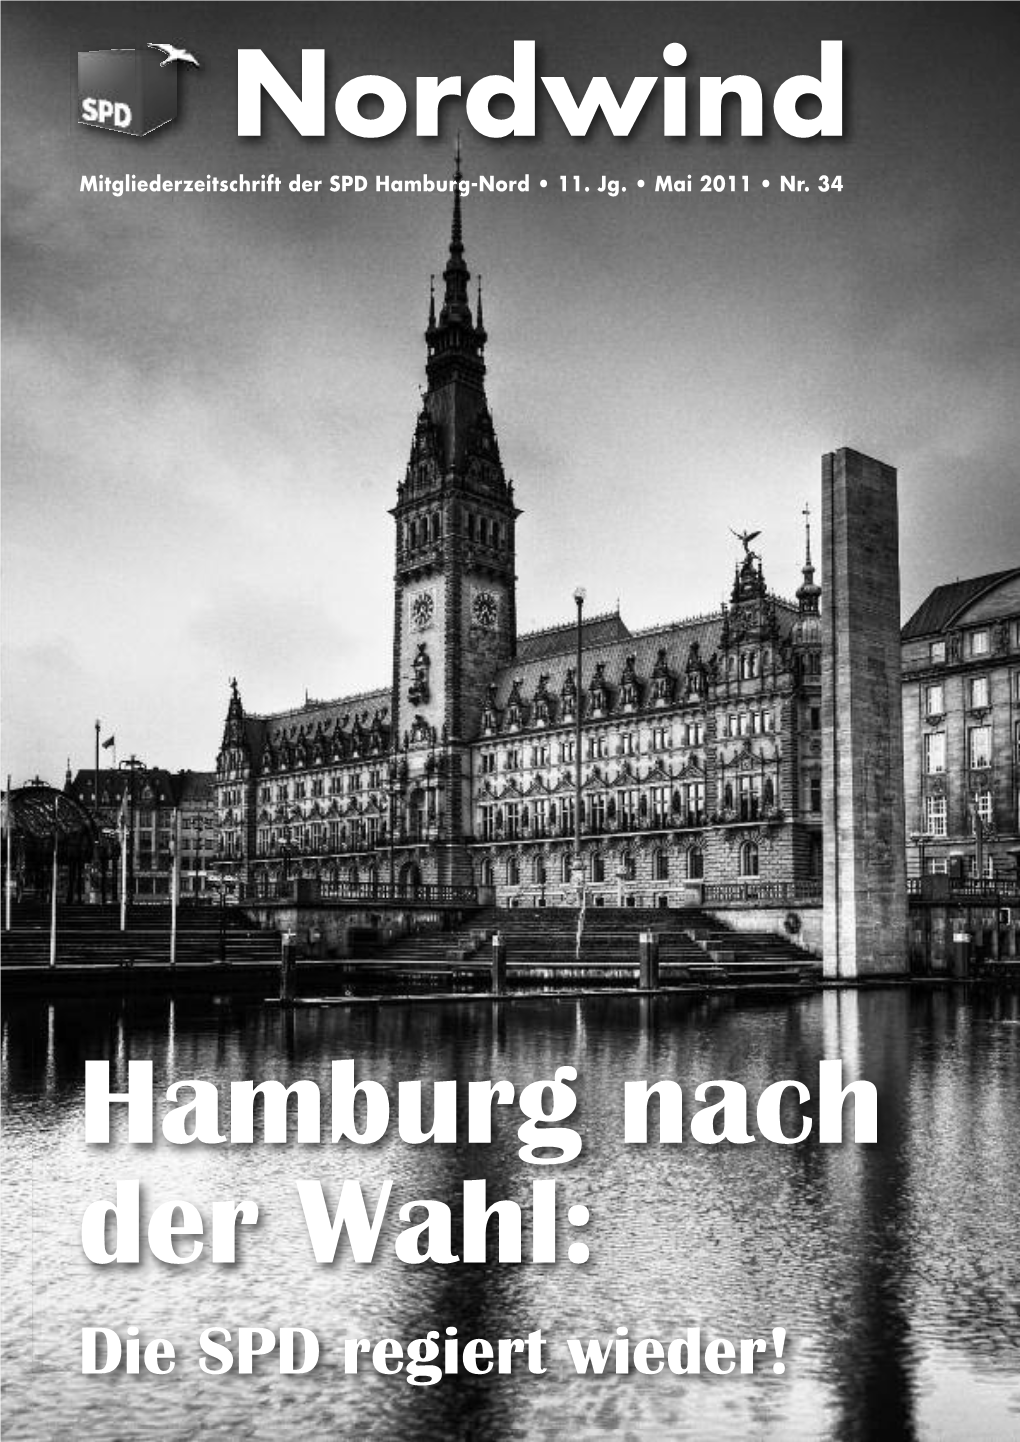 Nordwind Mitgliederzeitschrift Der SPD Hamburg-Nord • 11